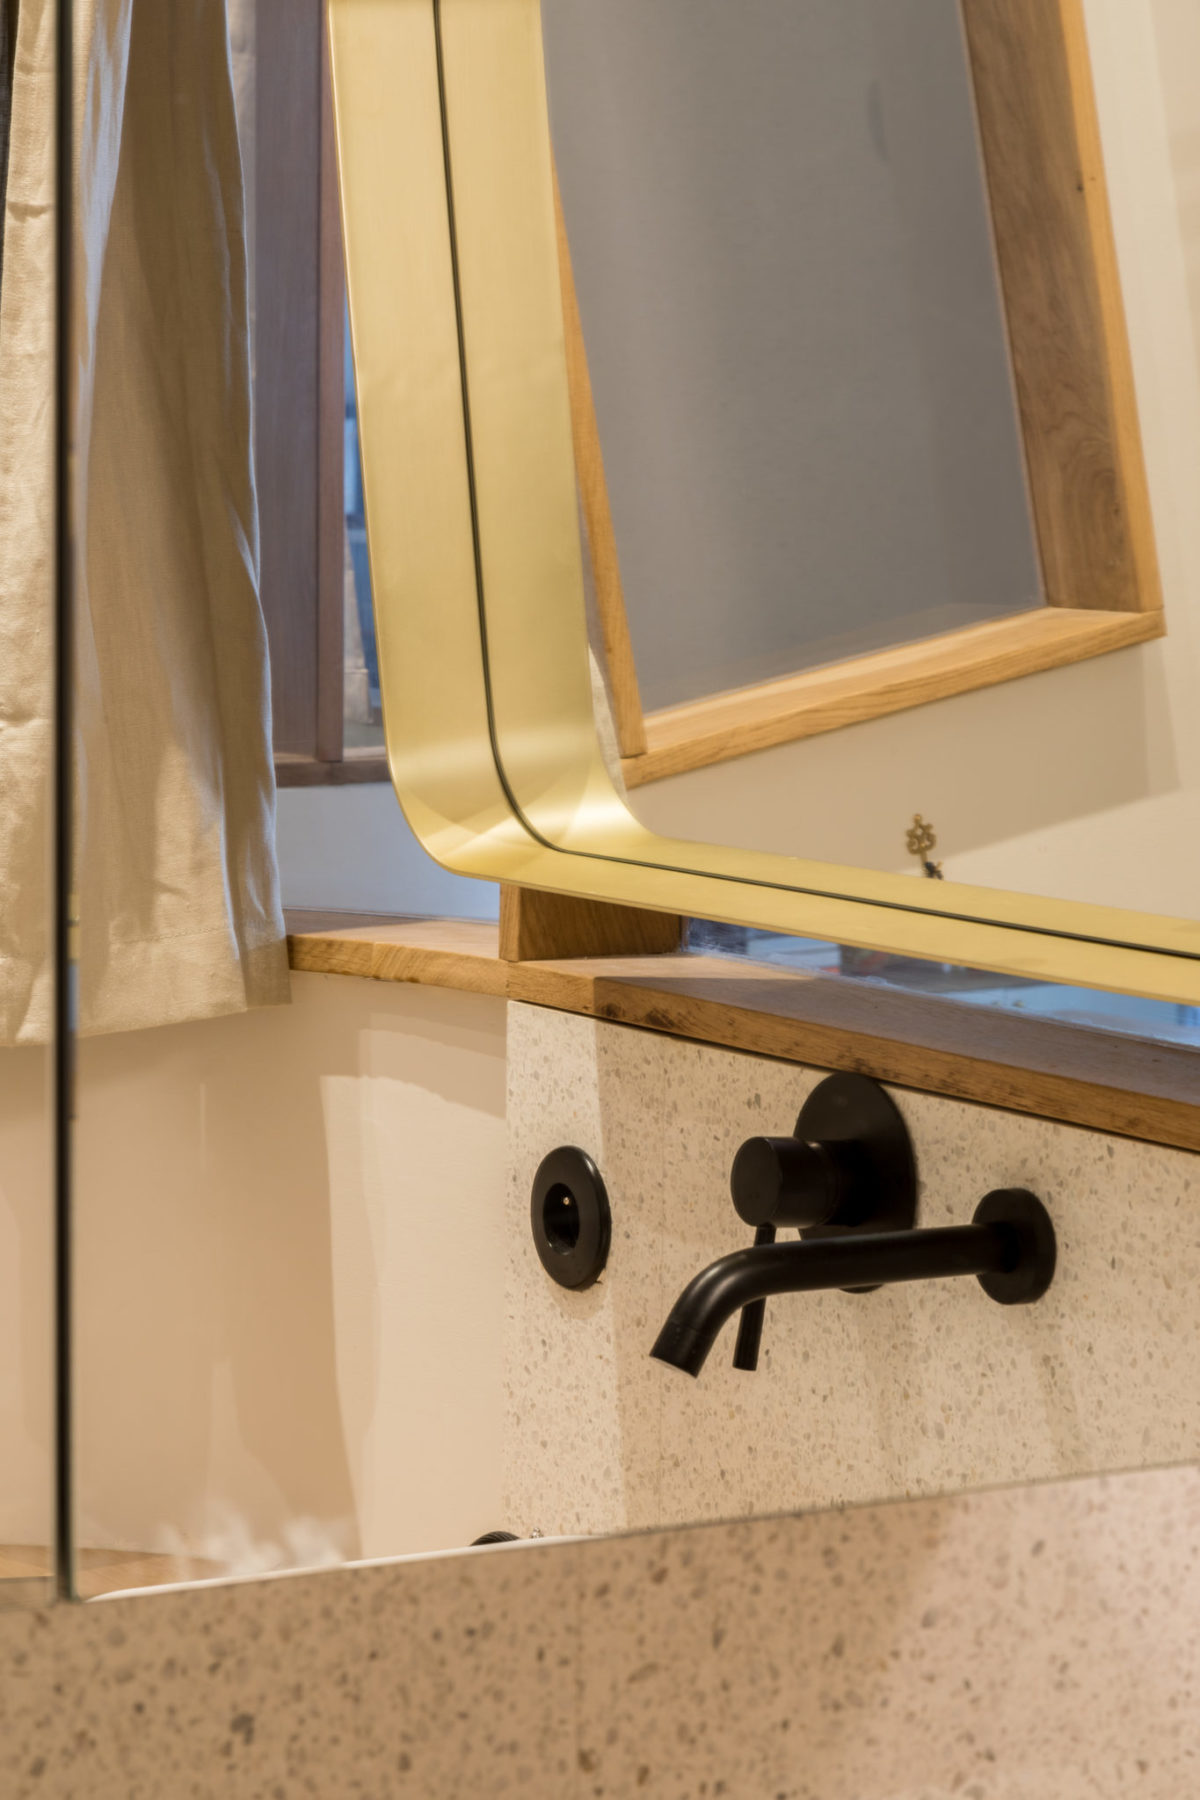 Salle de bains - Reflet miroir mur en terrazzo blanc et mitigeur noir encastré